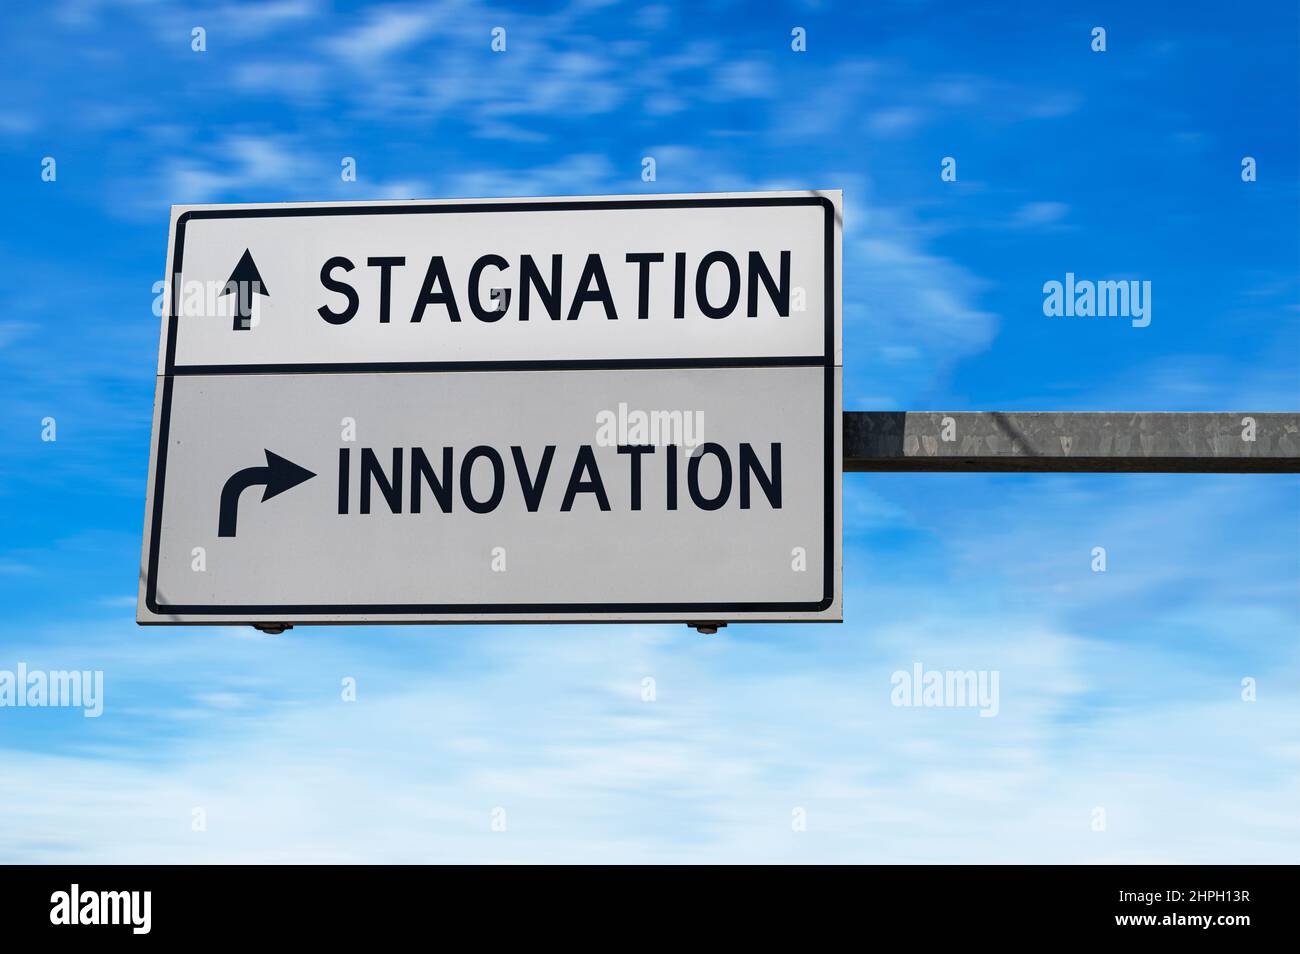 Straßenschild mit den Worten Stagnation und Innovation. Weiße zwei Straßenschilder mit Pfeil auf Metallmast auf blauem Himmel Hintergrund. Stockfoto